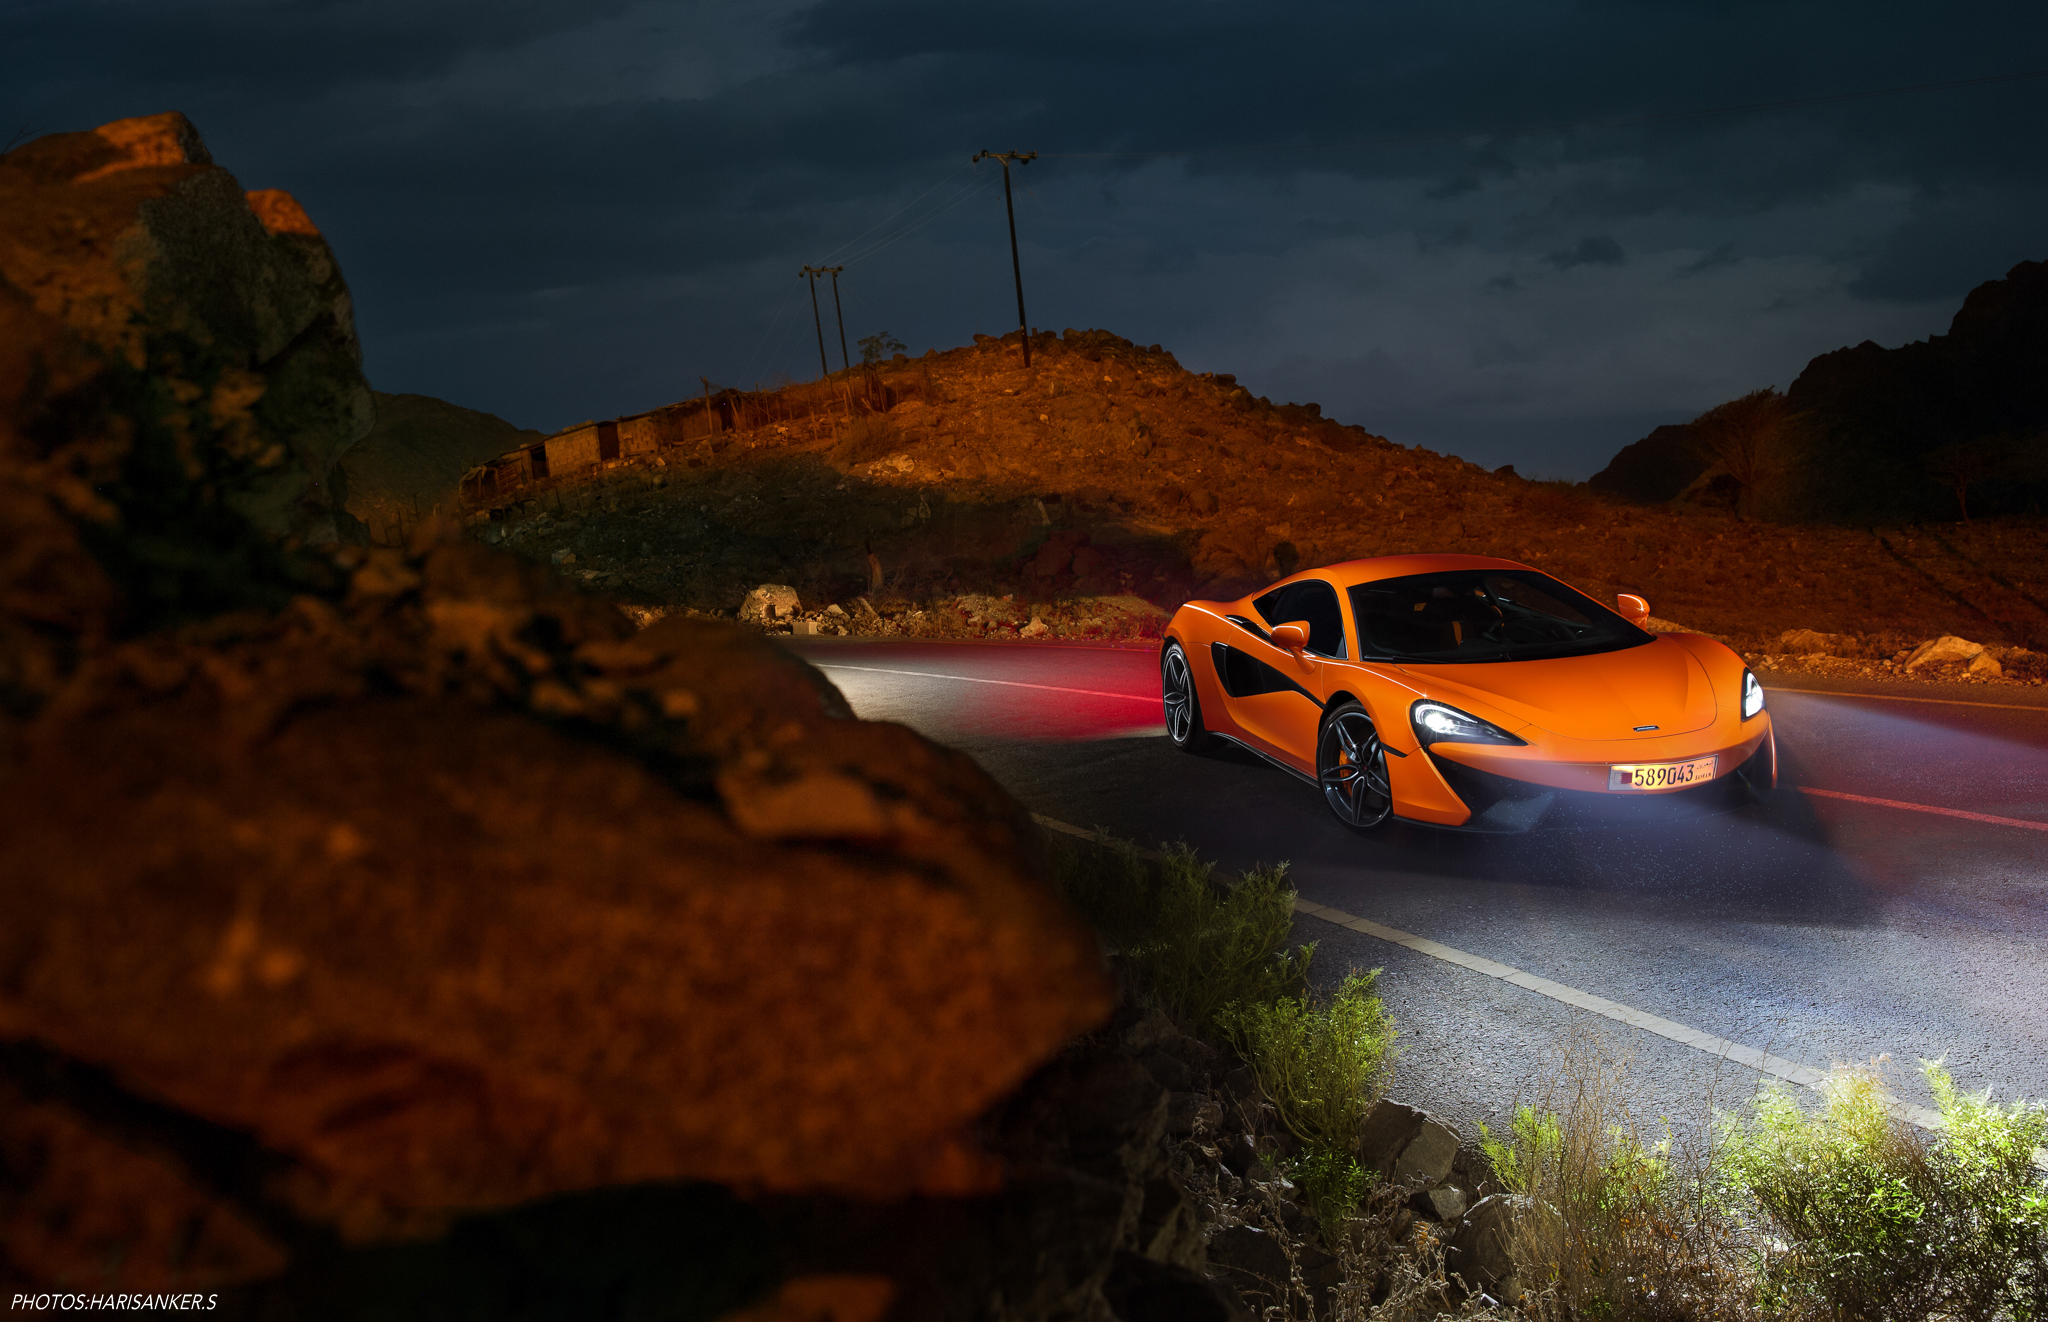 Бесплатное фото Mclaren оранжевого цвета на ночной дороге